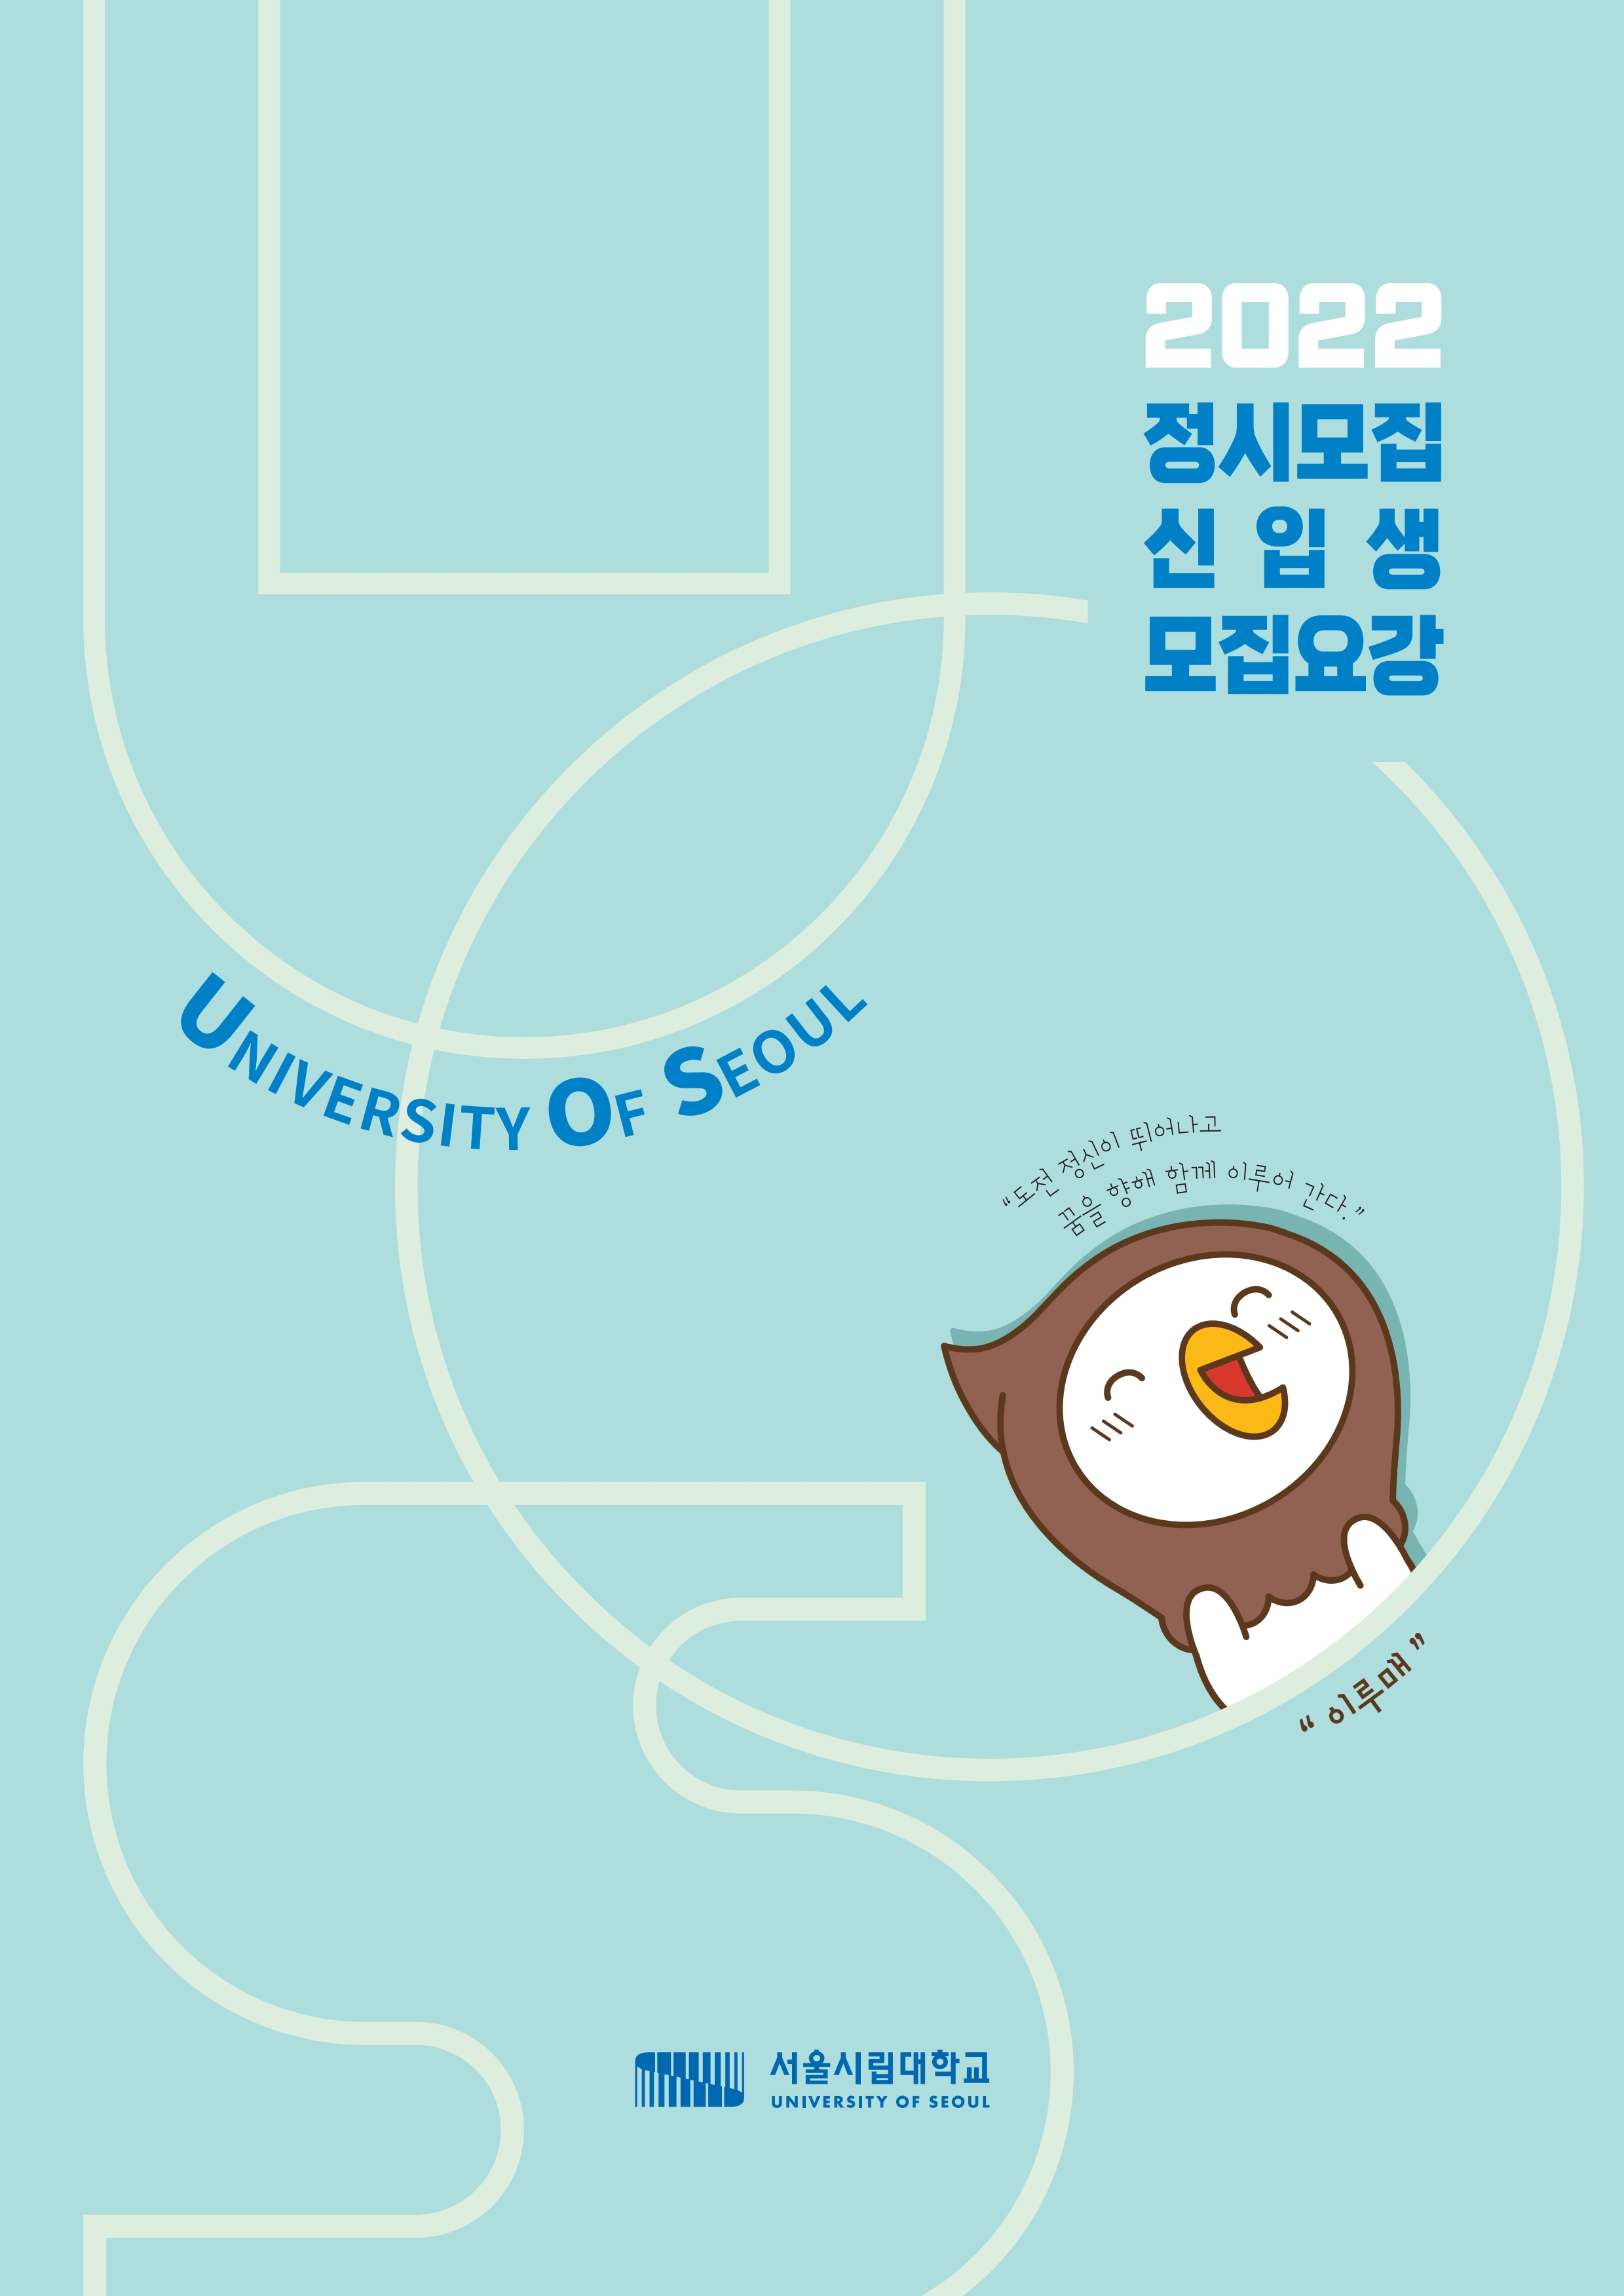 2022 정시모집 신입생 모집요강 UNIVERSITY OF SEOUL 도전 정신이 뛰어나고 꿈을 향해 함께 이루어 간다. '이루매' 서울시립대학교 UNIVERSITY OF SEOUL